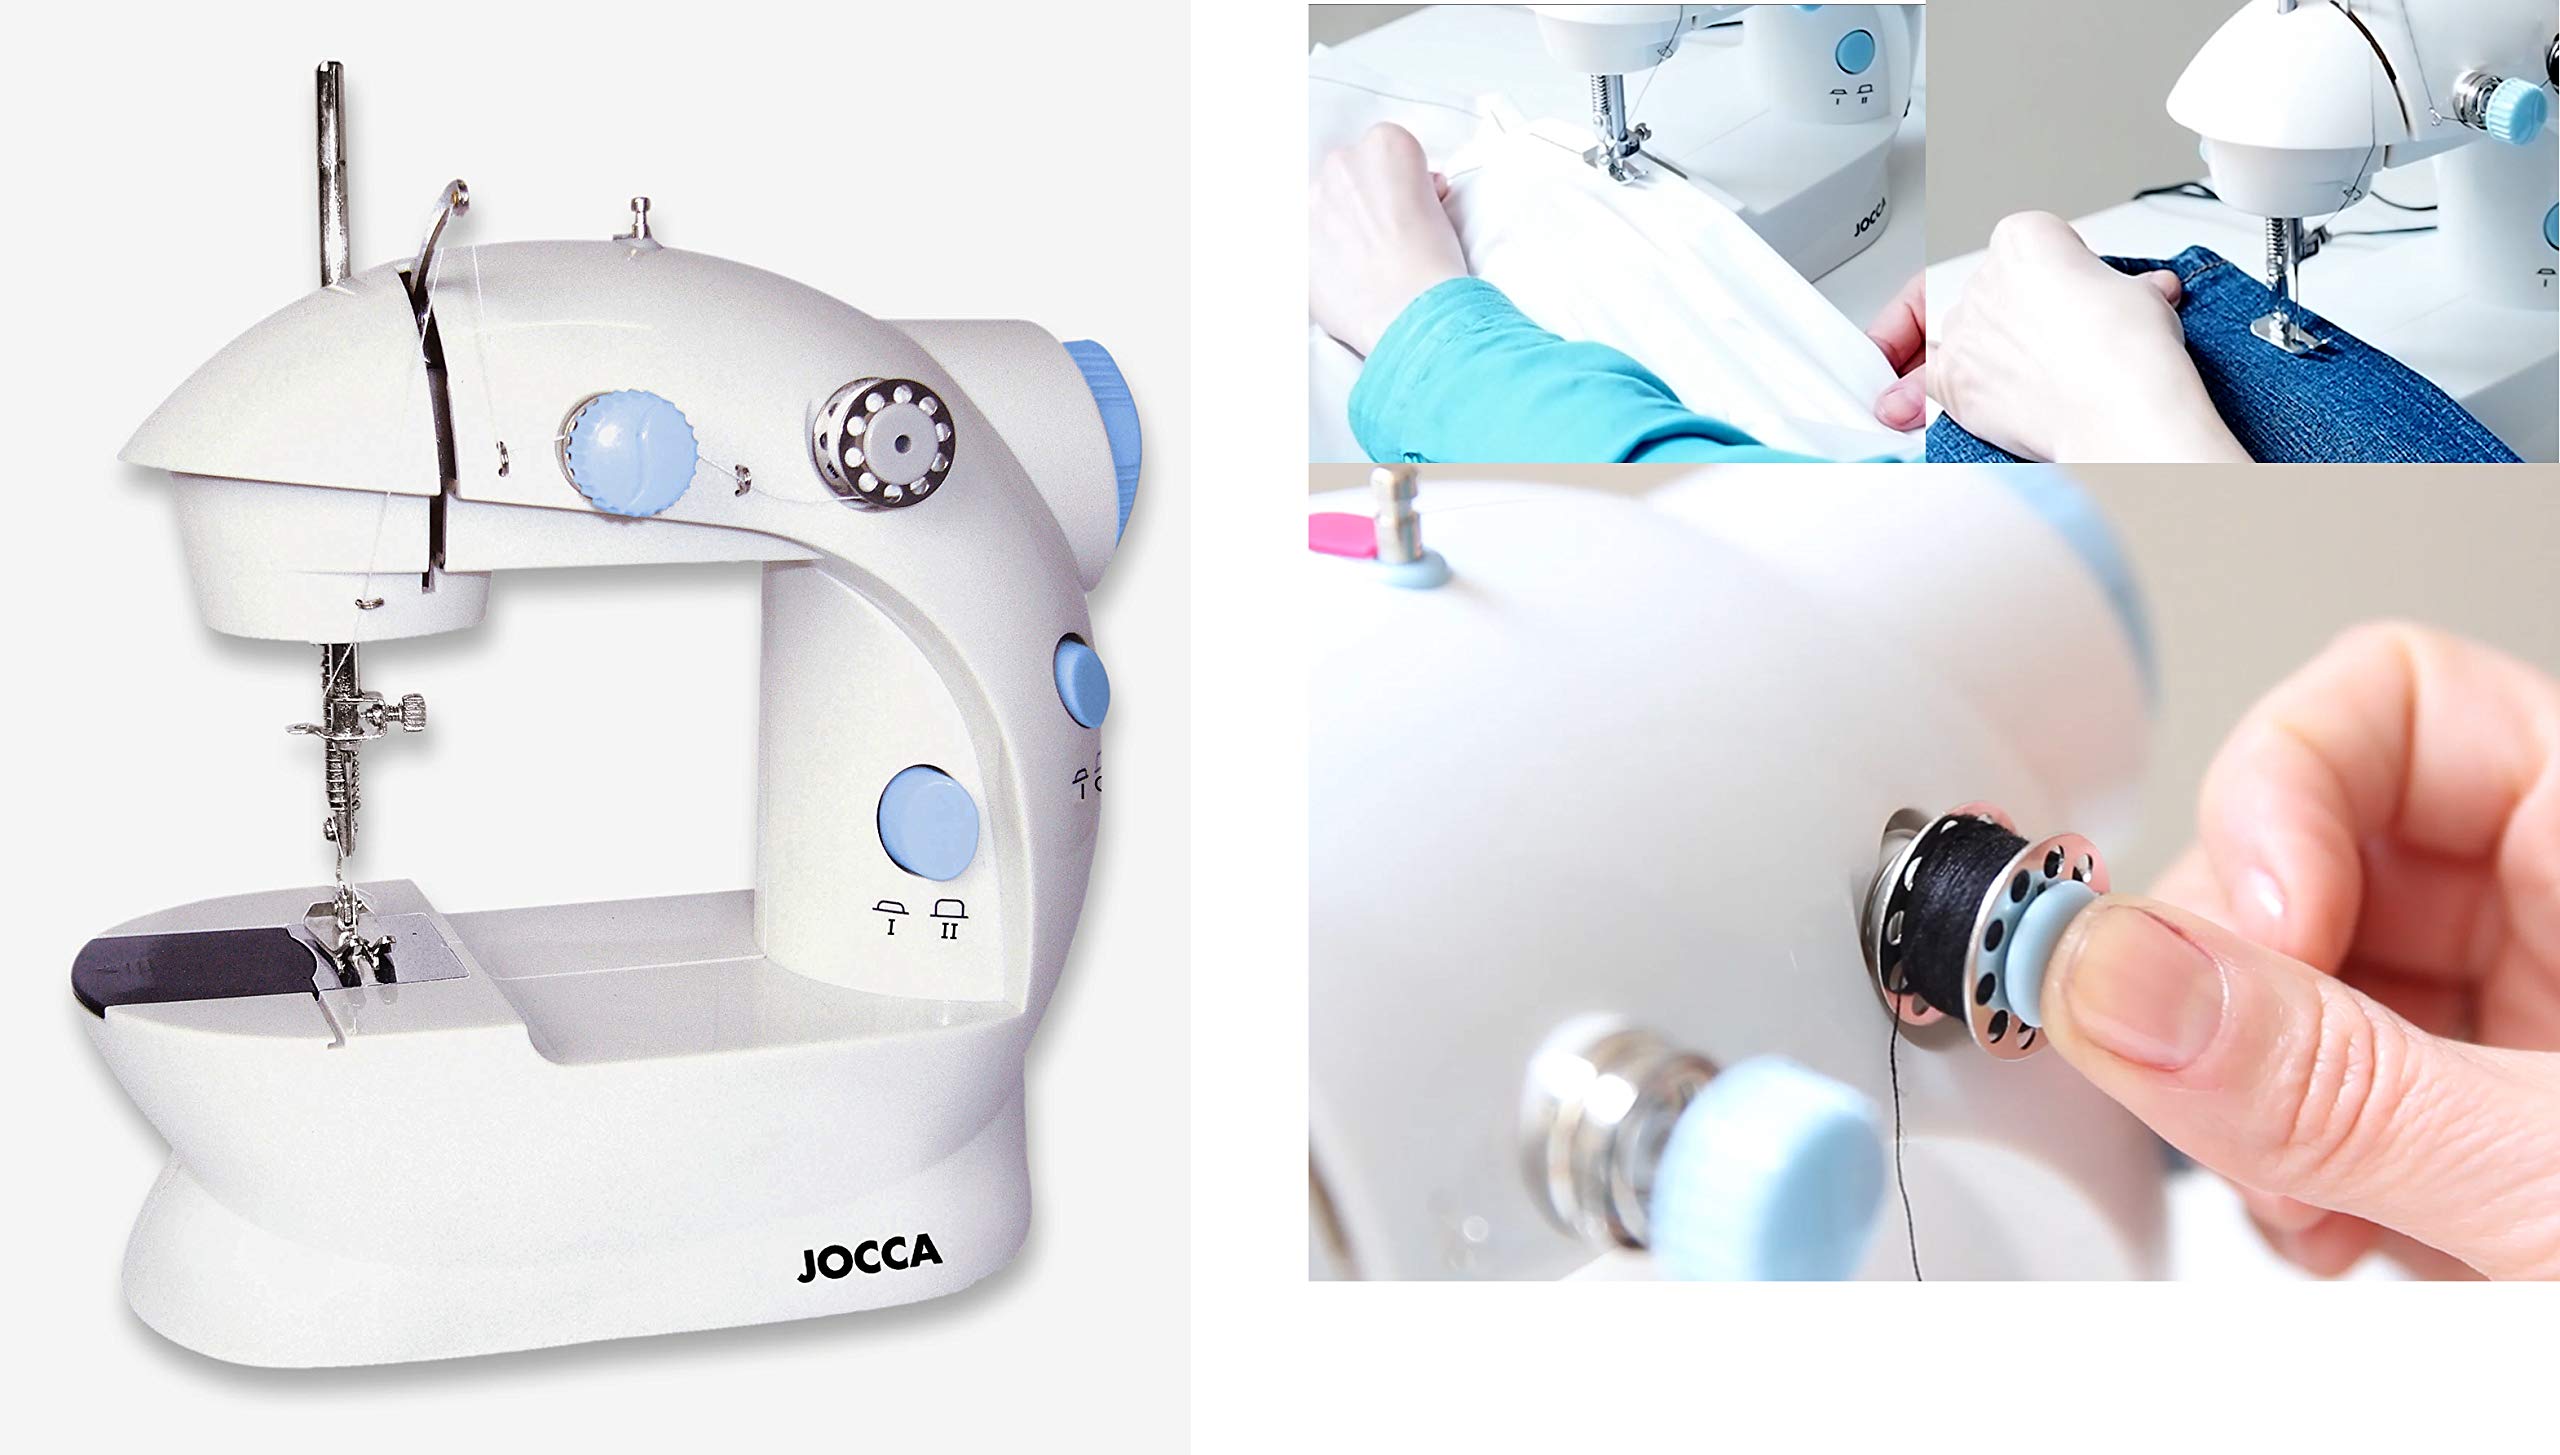 Jocca - Tragbare Nähmaschine | Elektrische Mini-Nähmaschine | Einfach zu Bedienen | Doppelstich | 2 Geschwindigkeiten und Fußpedal | Kinder-Nähmaschine